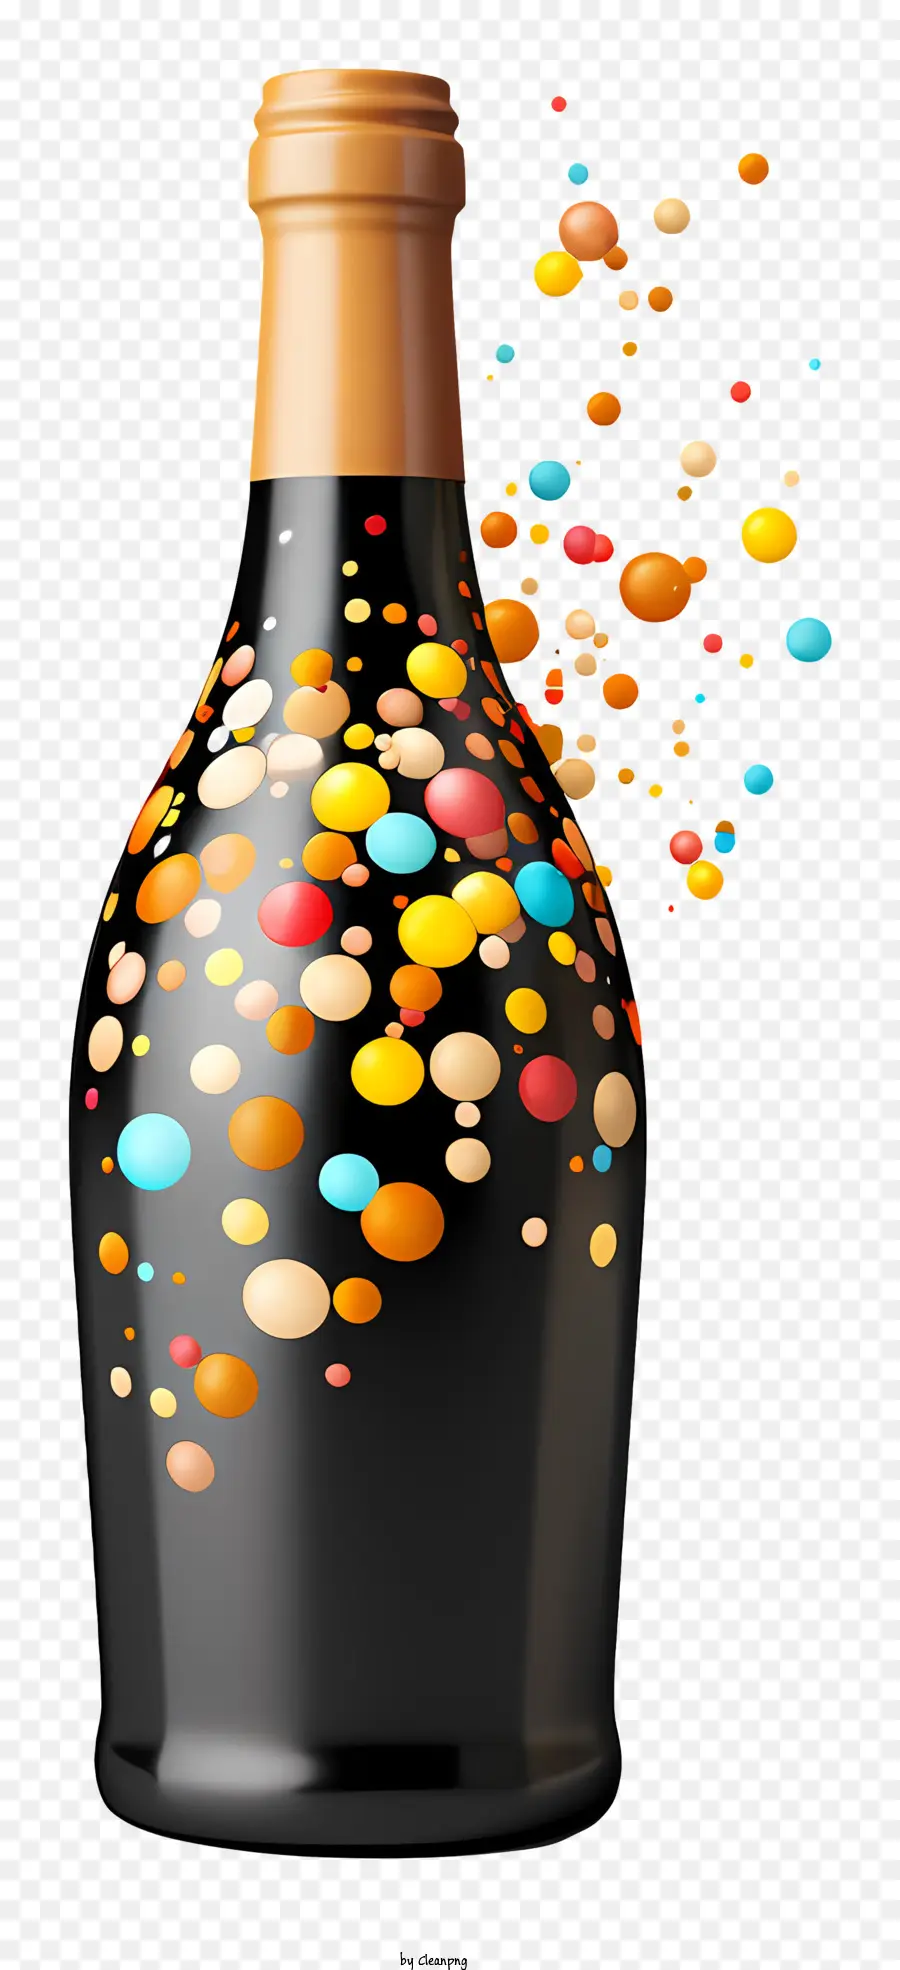 bolle di bottiglie di vino che versano bolle multicolore bottiglia nera - Bottiglia di vino colorata piena di bolle